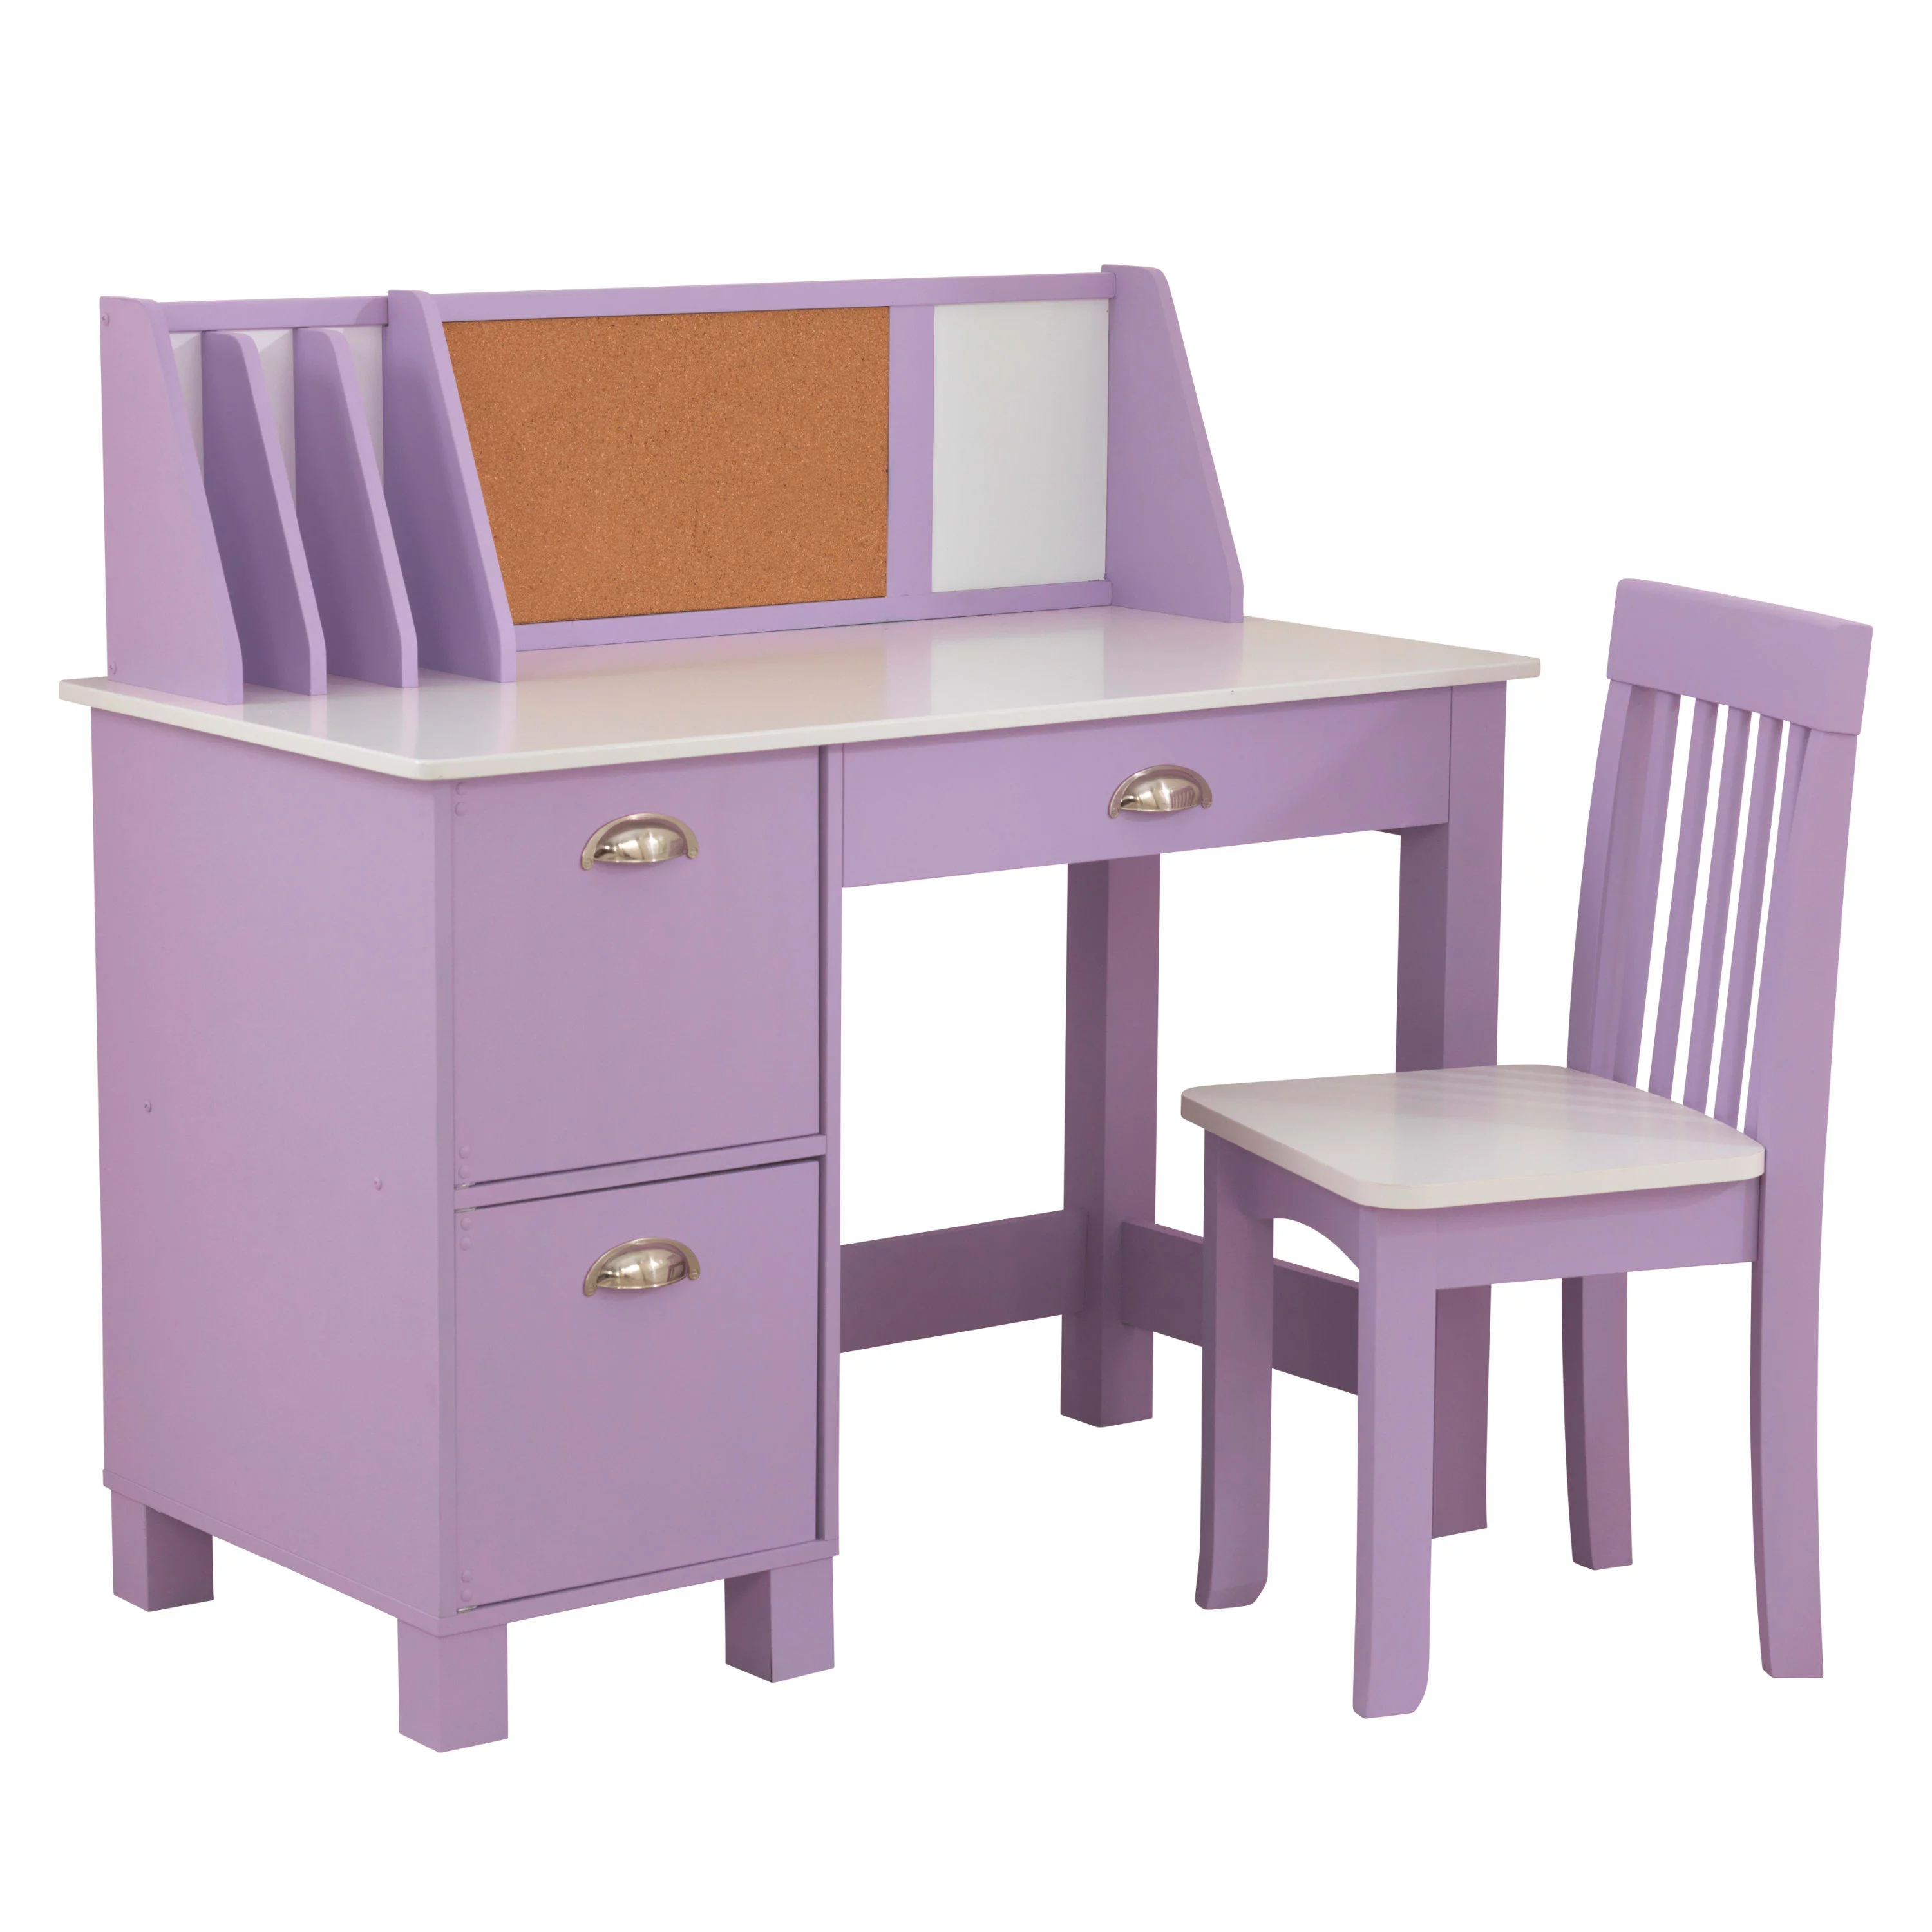 KidKraft Children's Study Desk with Chair, Lavender